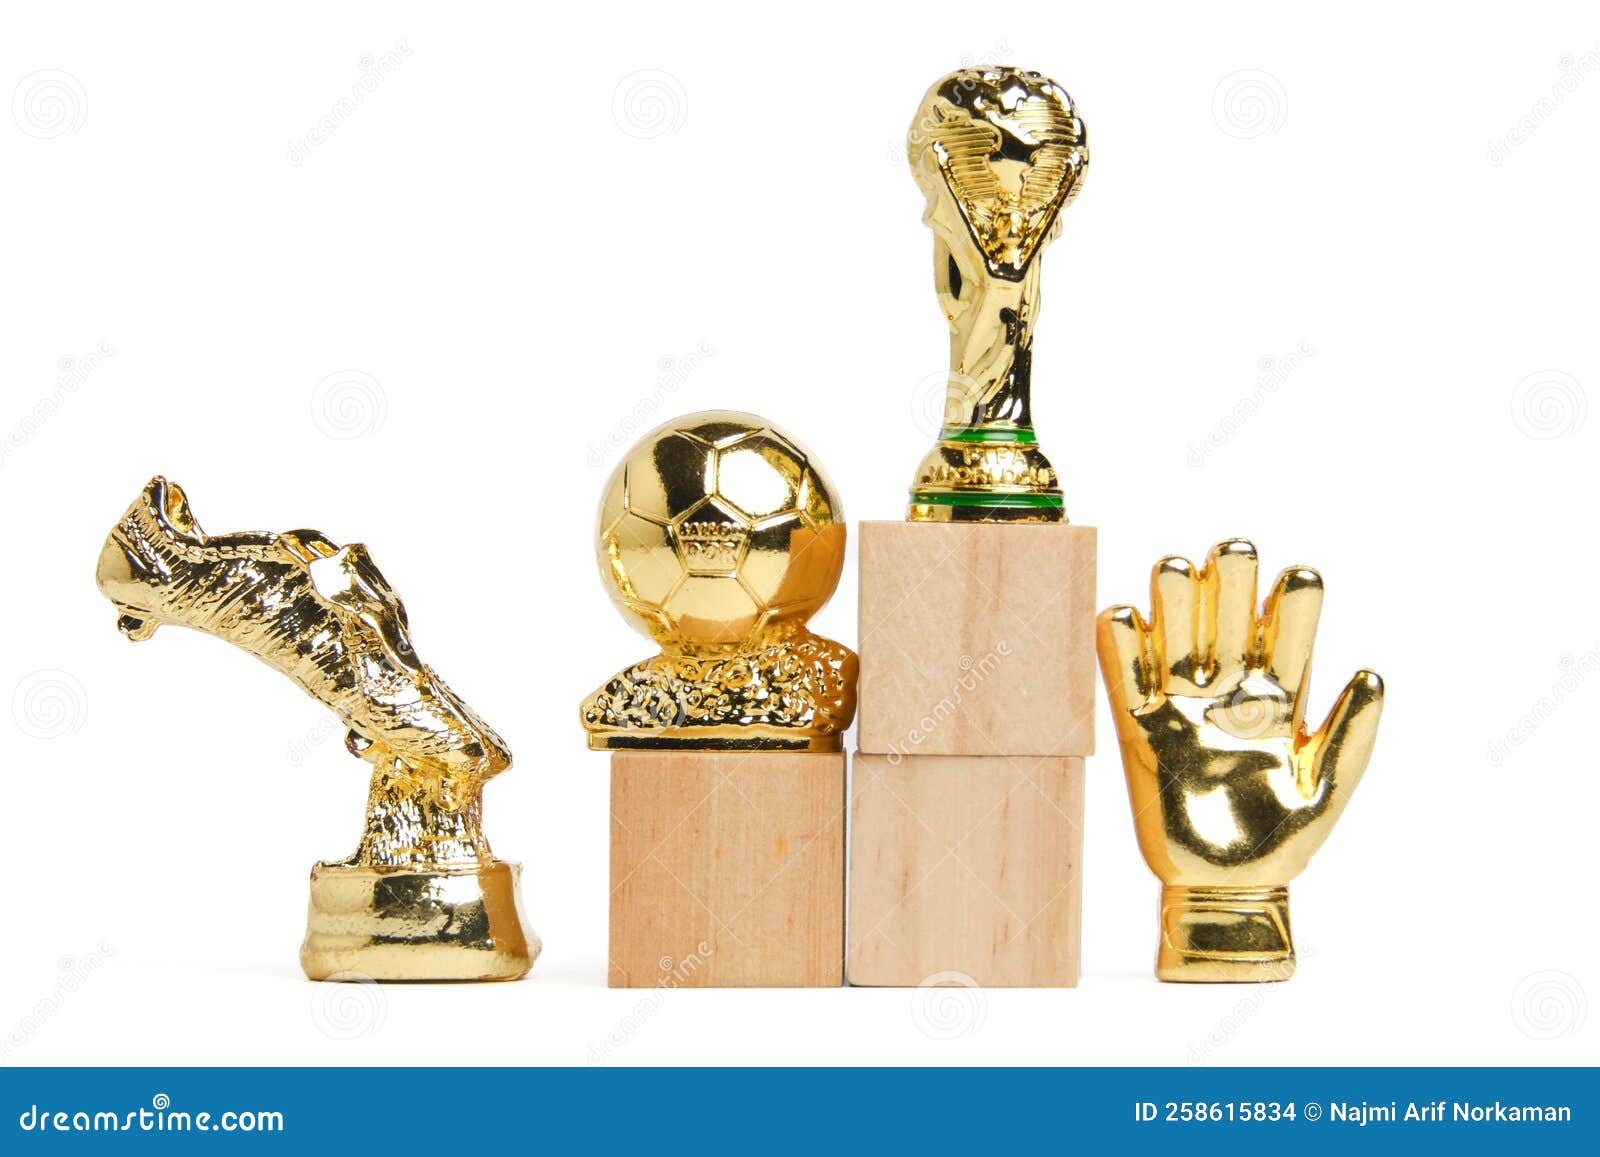 Prix Du Football Et Réalisation Image stock éditorial - Image du fond,  zone: 258615834